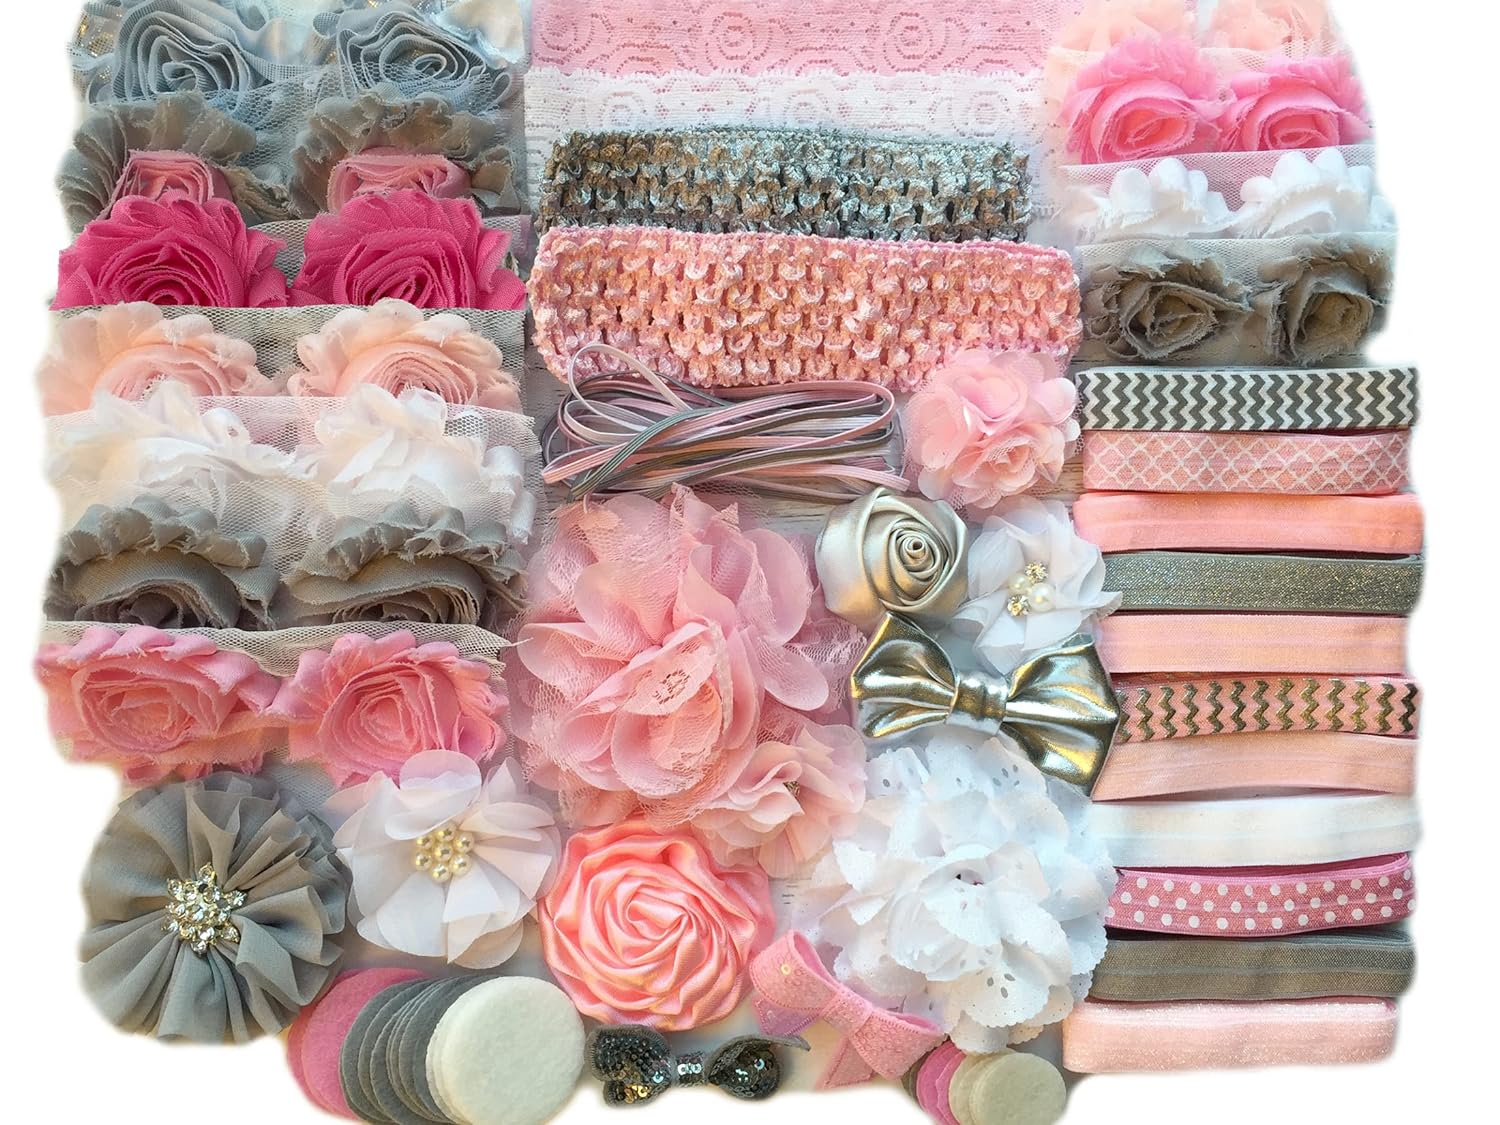 Baby Shower Headband Kit DIY Headband Kit makes 30 Headbands – Pink and Grey